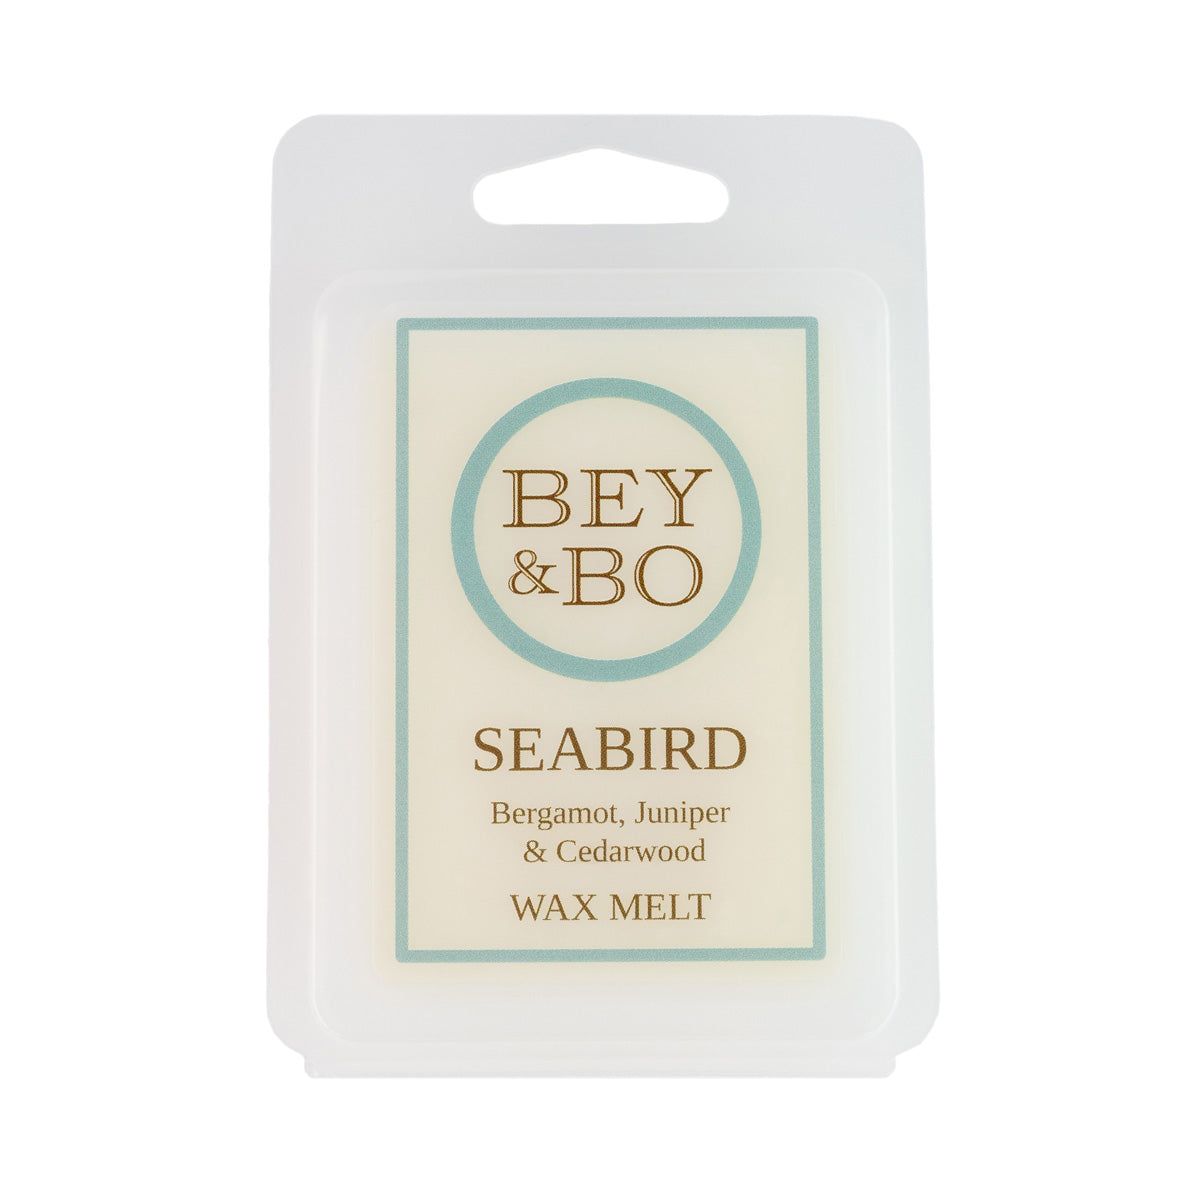 Vegan Friendly Seabird Wax Melt